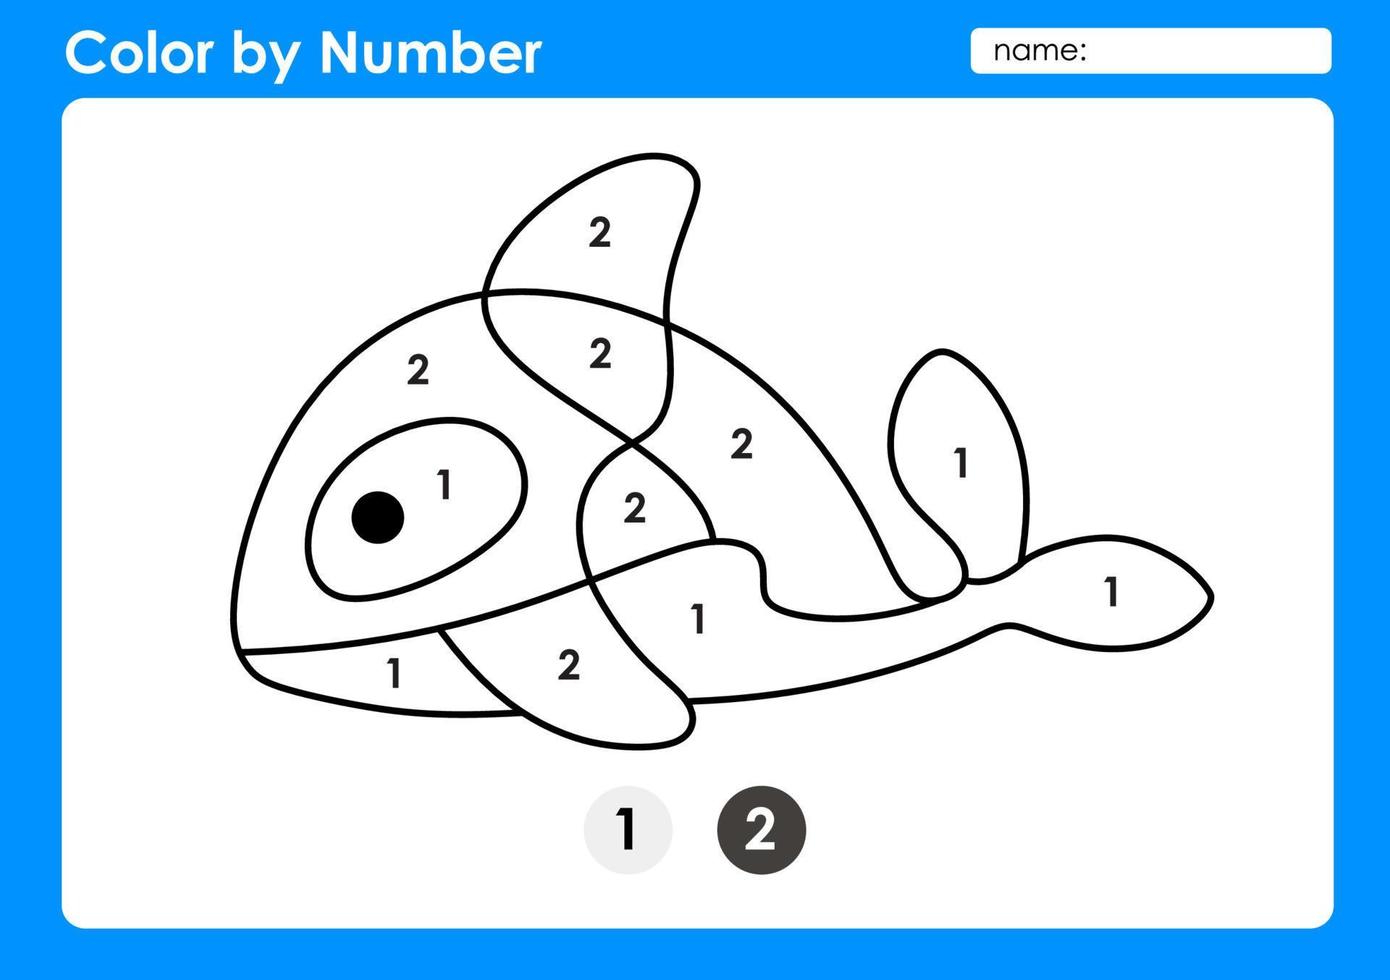 hoja de trabajo de color por número para que los niños aprendan números coloreando ballenas asesinas vector